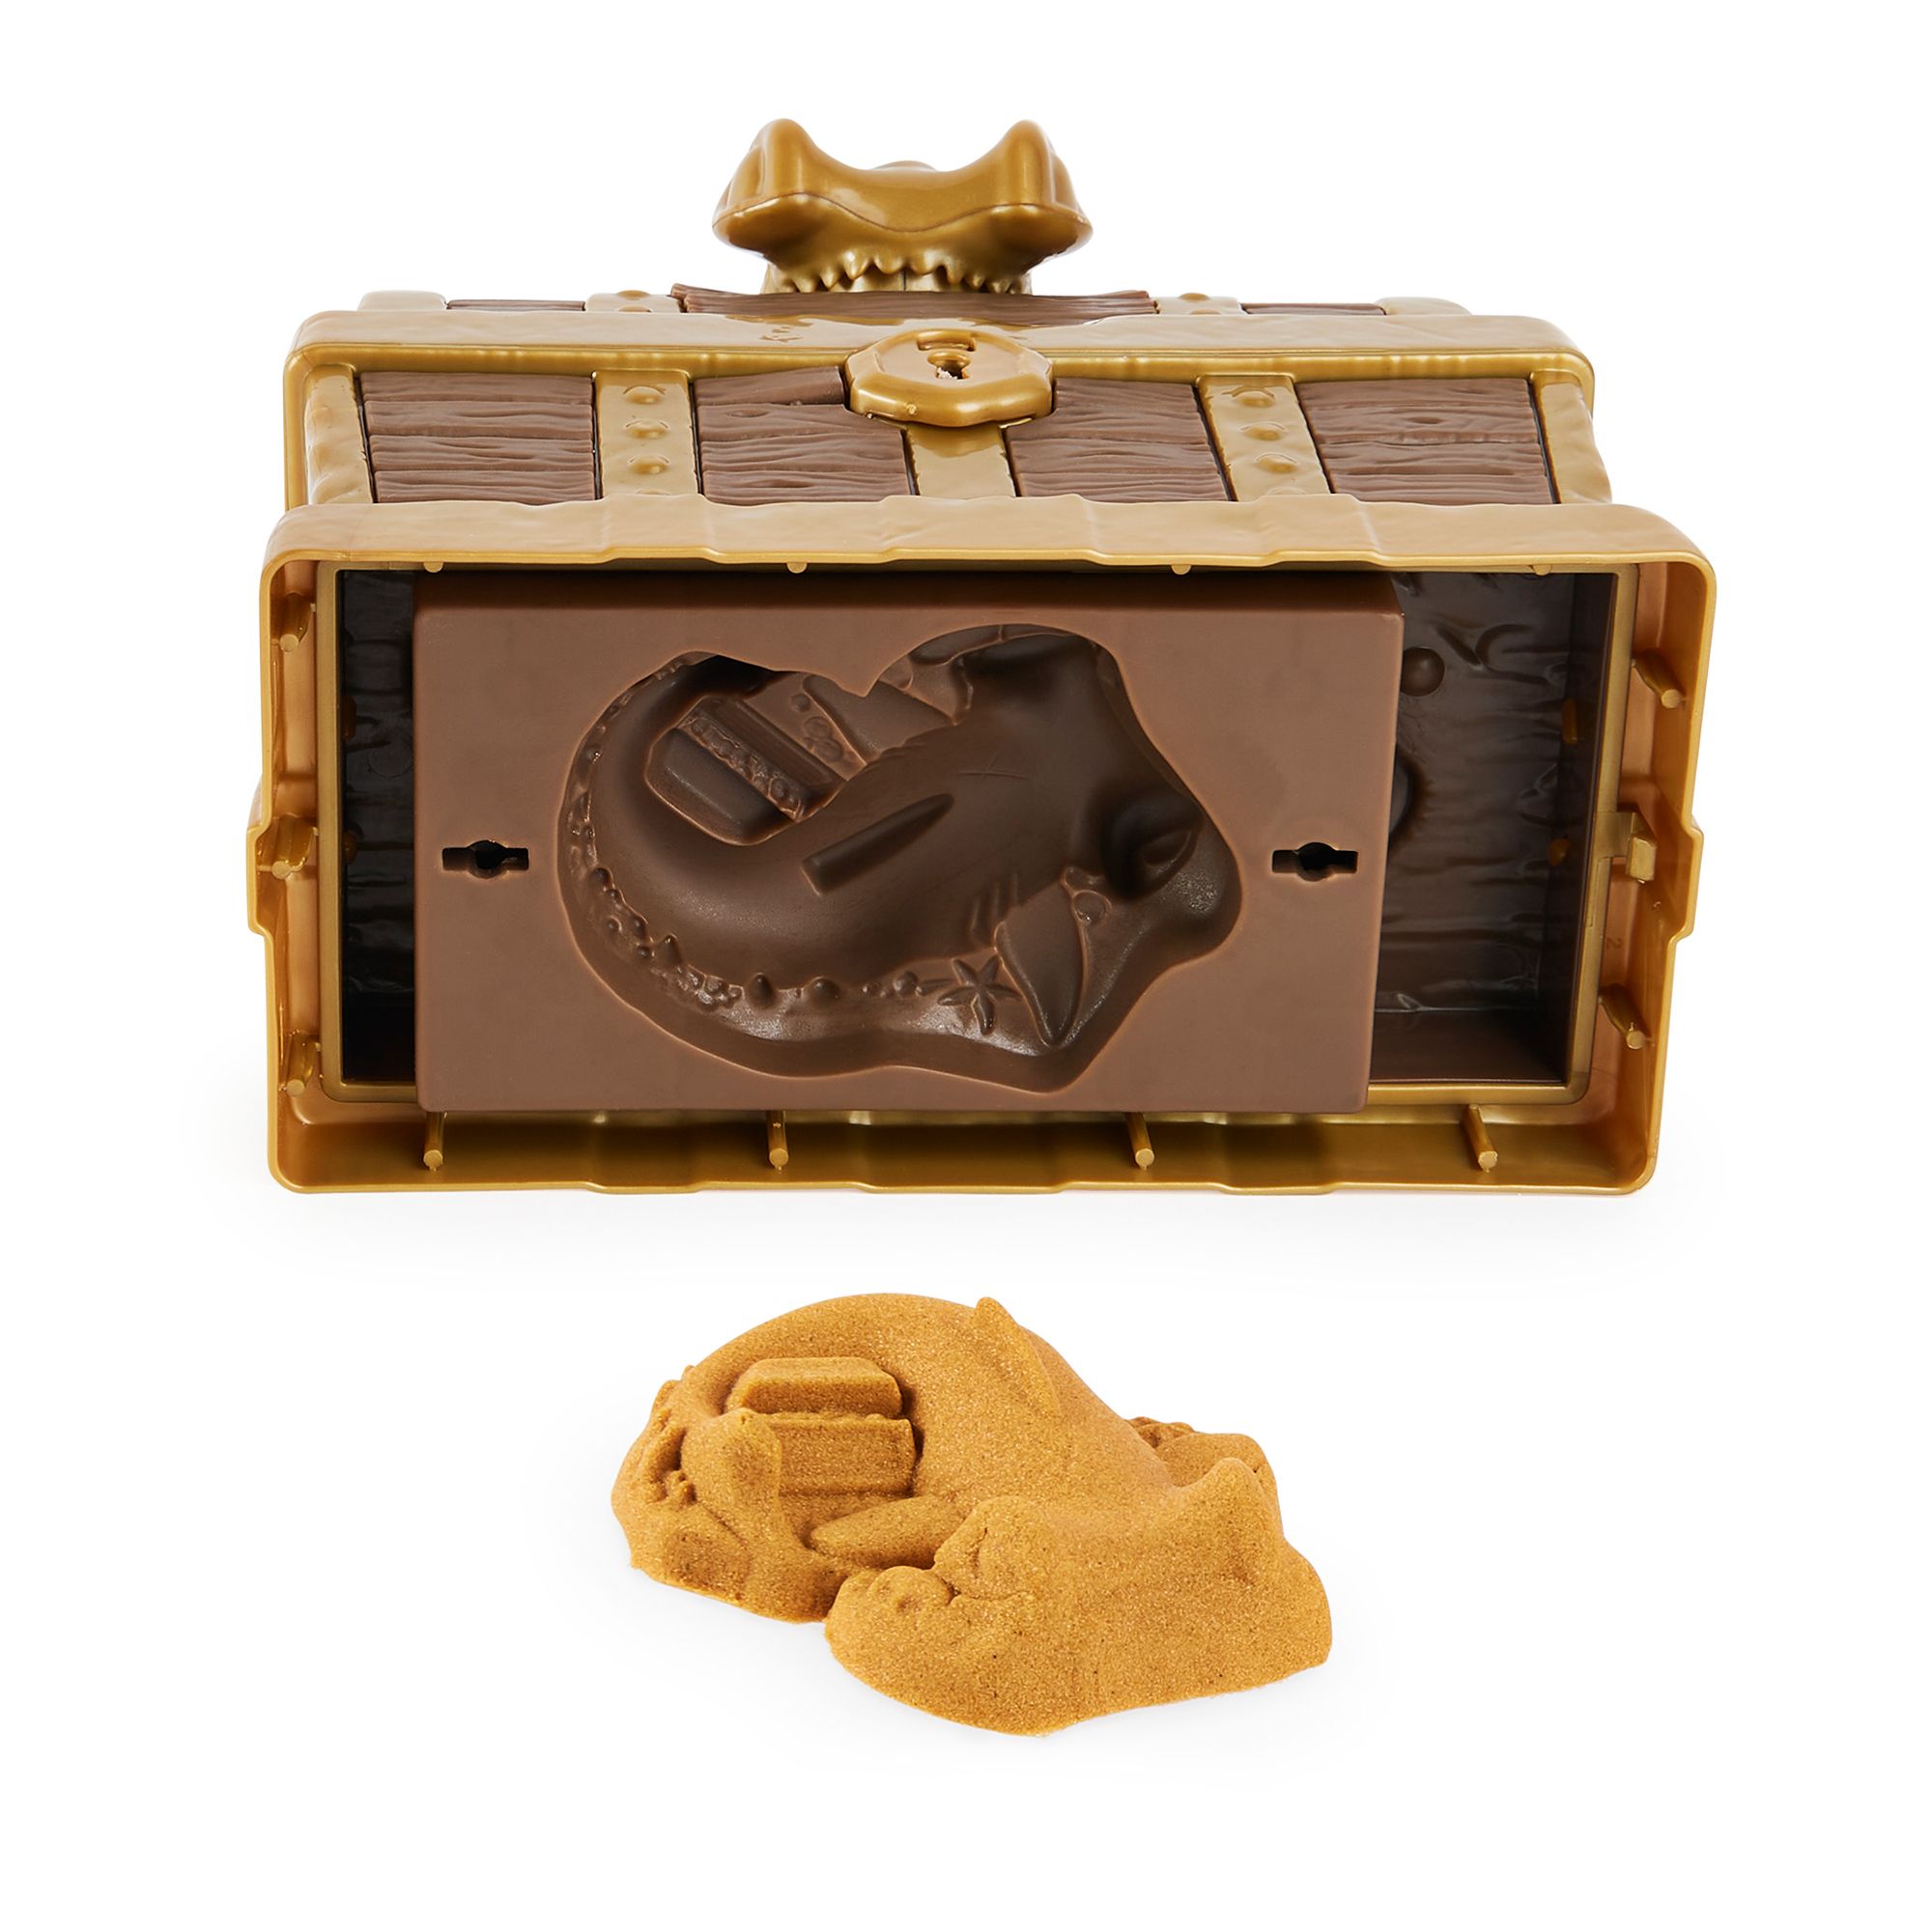 Kinetic Sand Toy, Buried Treasure, 3+ - 6 oz